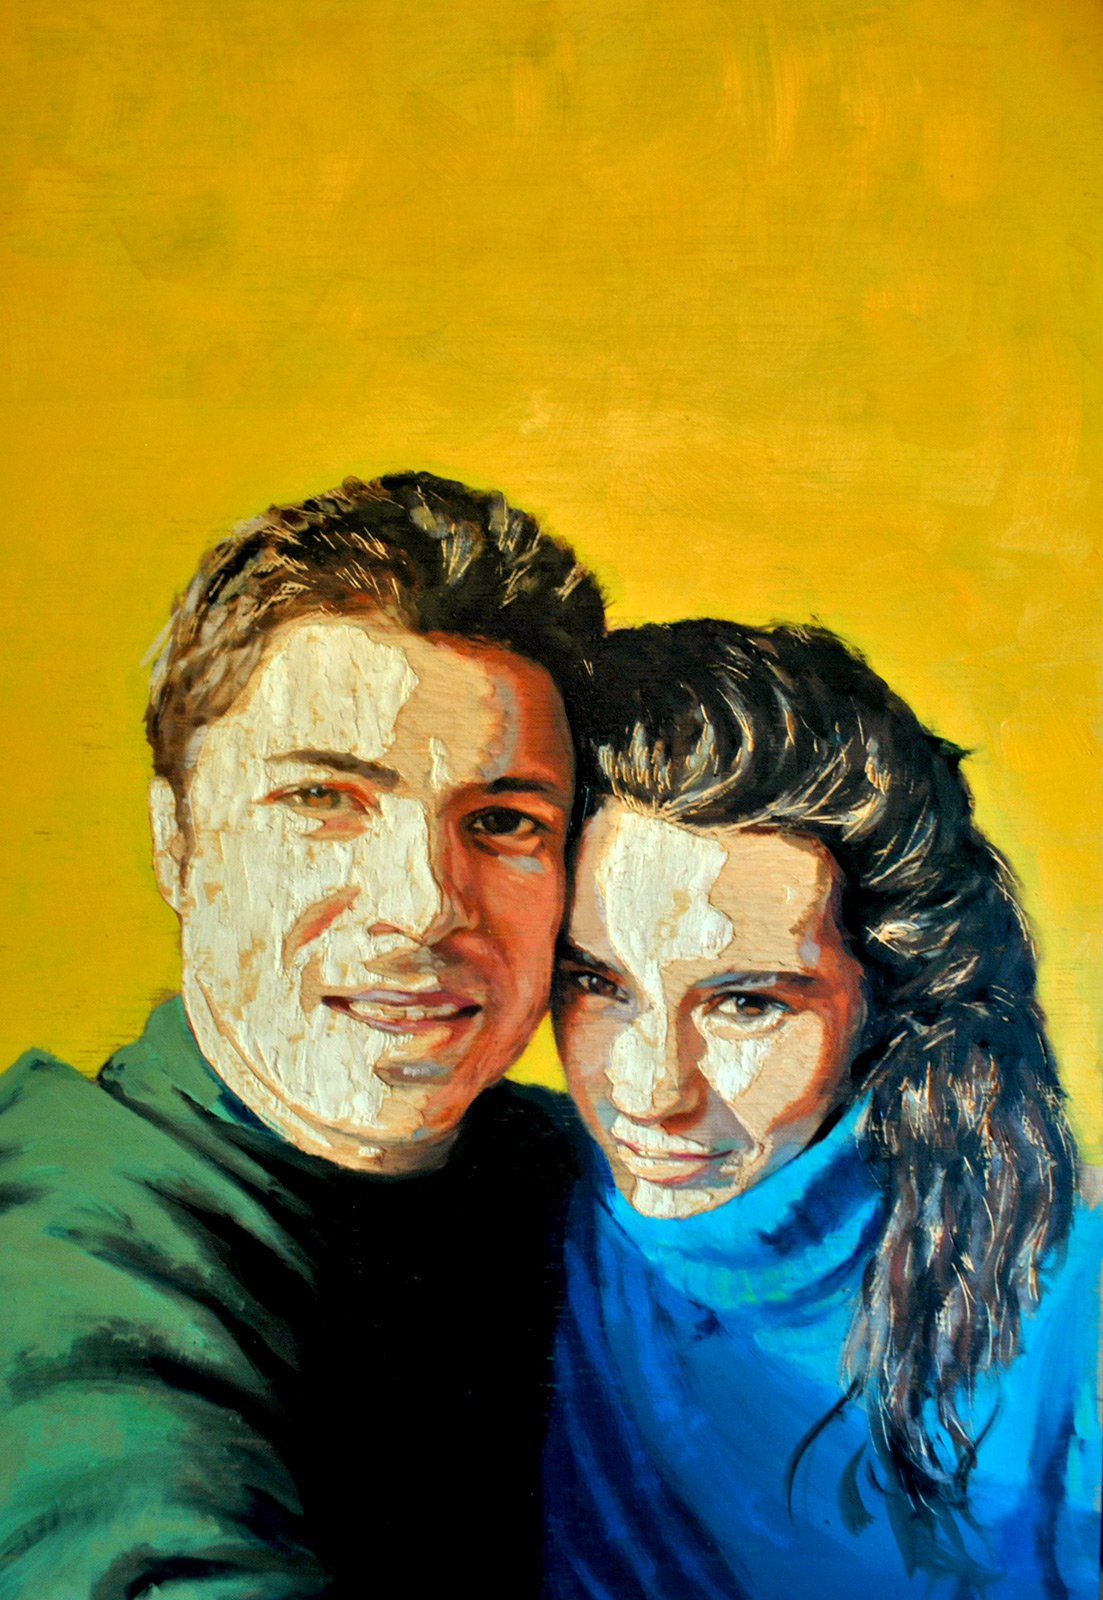 Carmen y yo - Madera de contrachapado tallada y pintada al óleo - 35x50 cm - 2012 - Matute Art